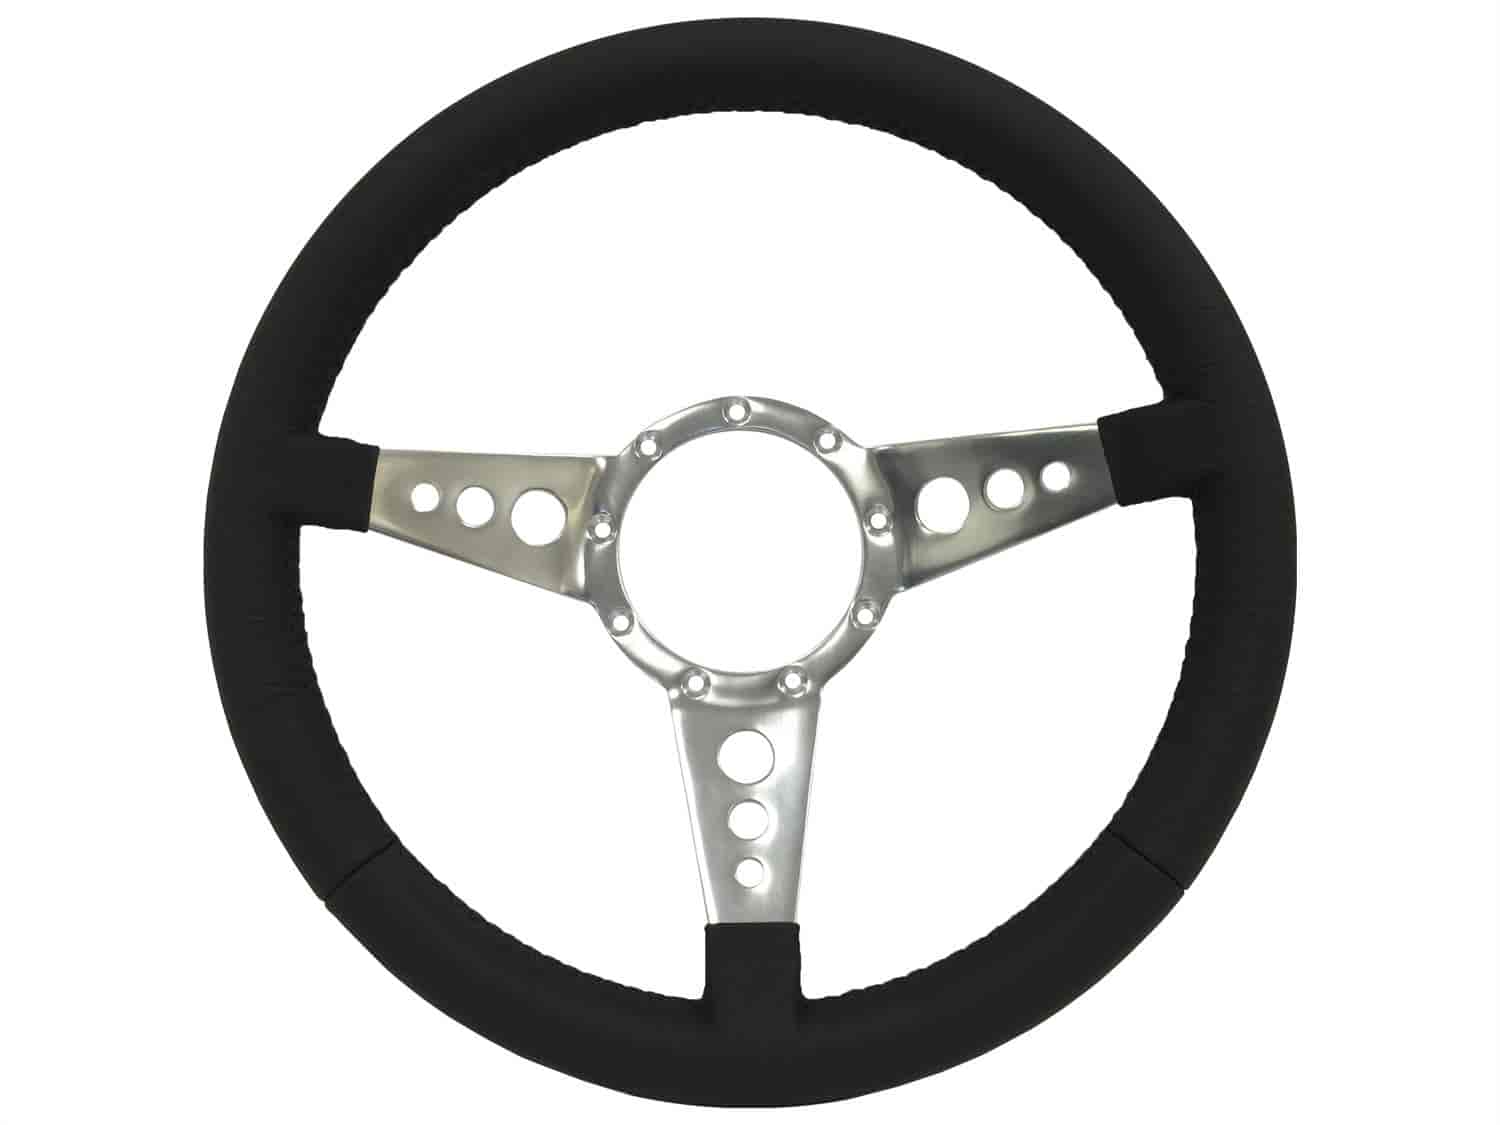 S9 Sport Steering Wheel, 14 in. Diameter, Premium Black Leather Grip